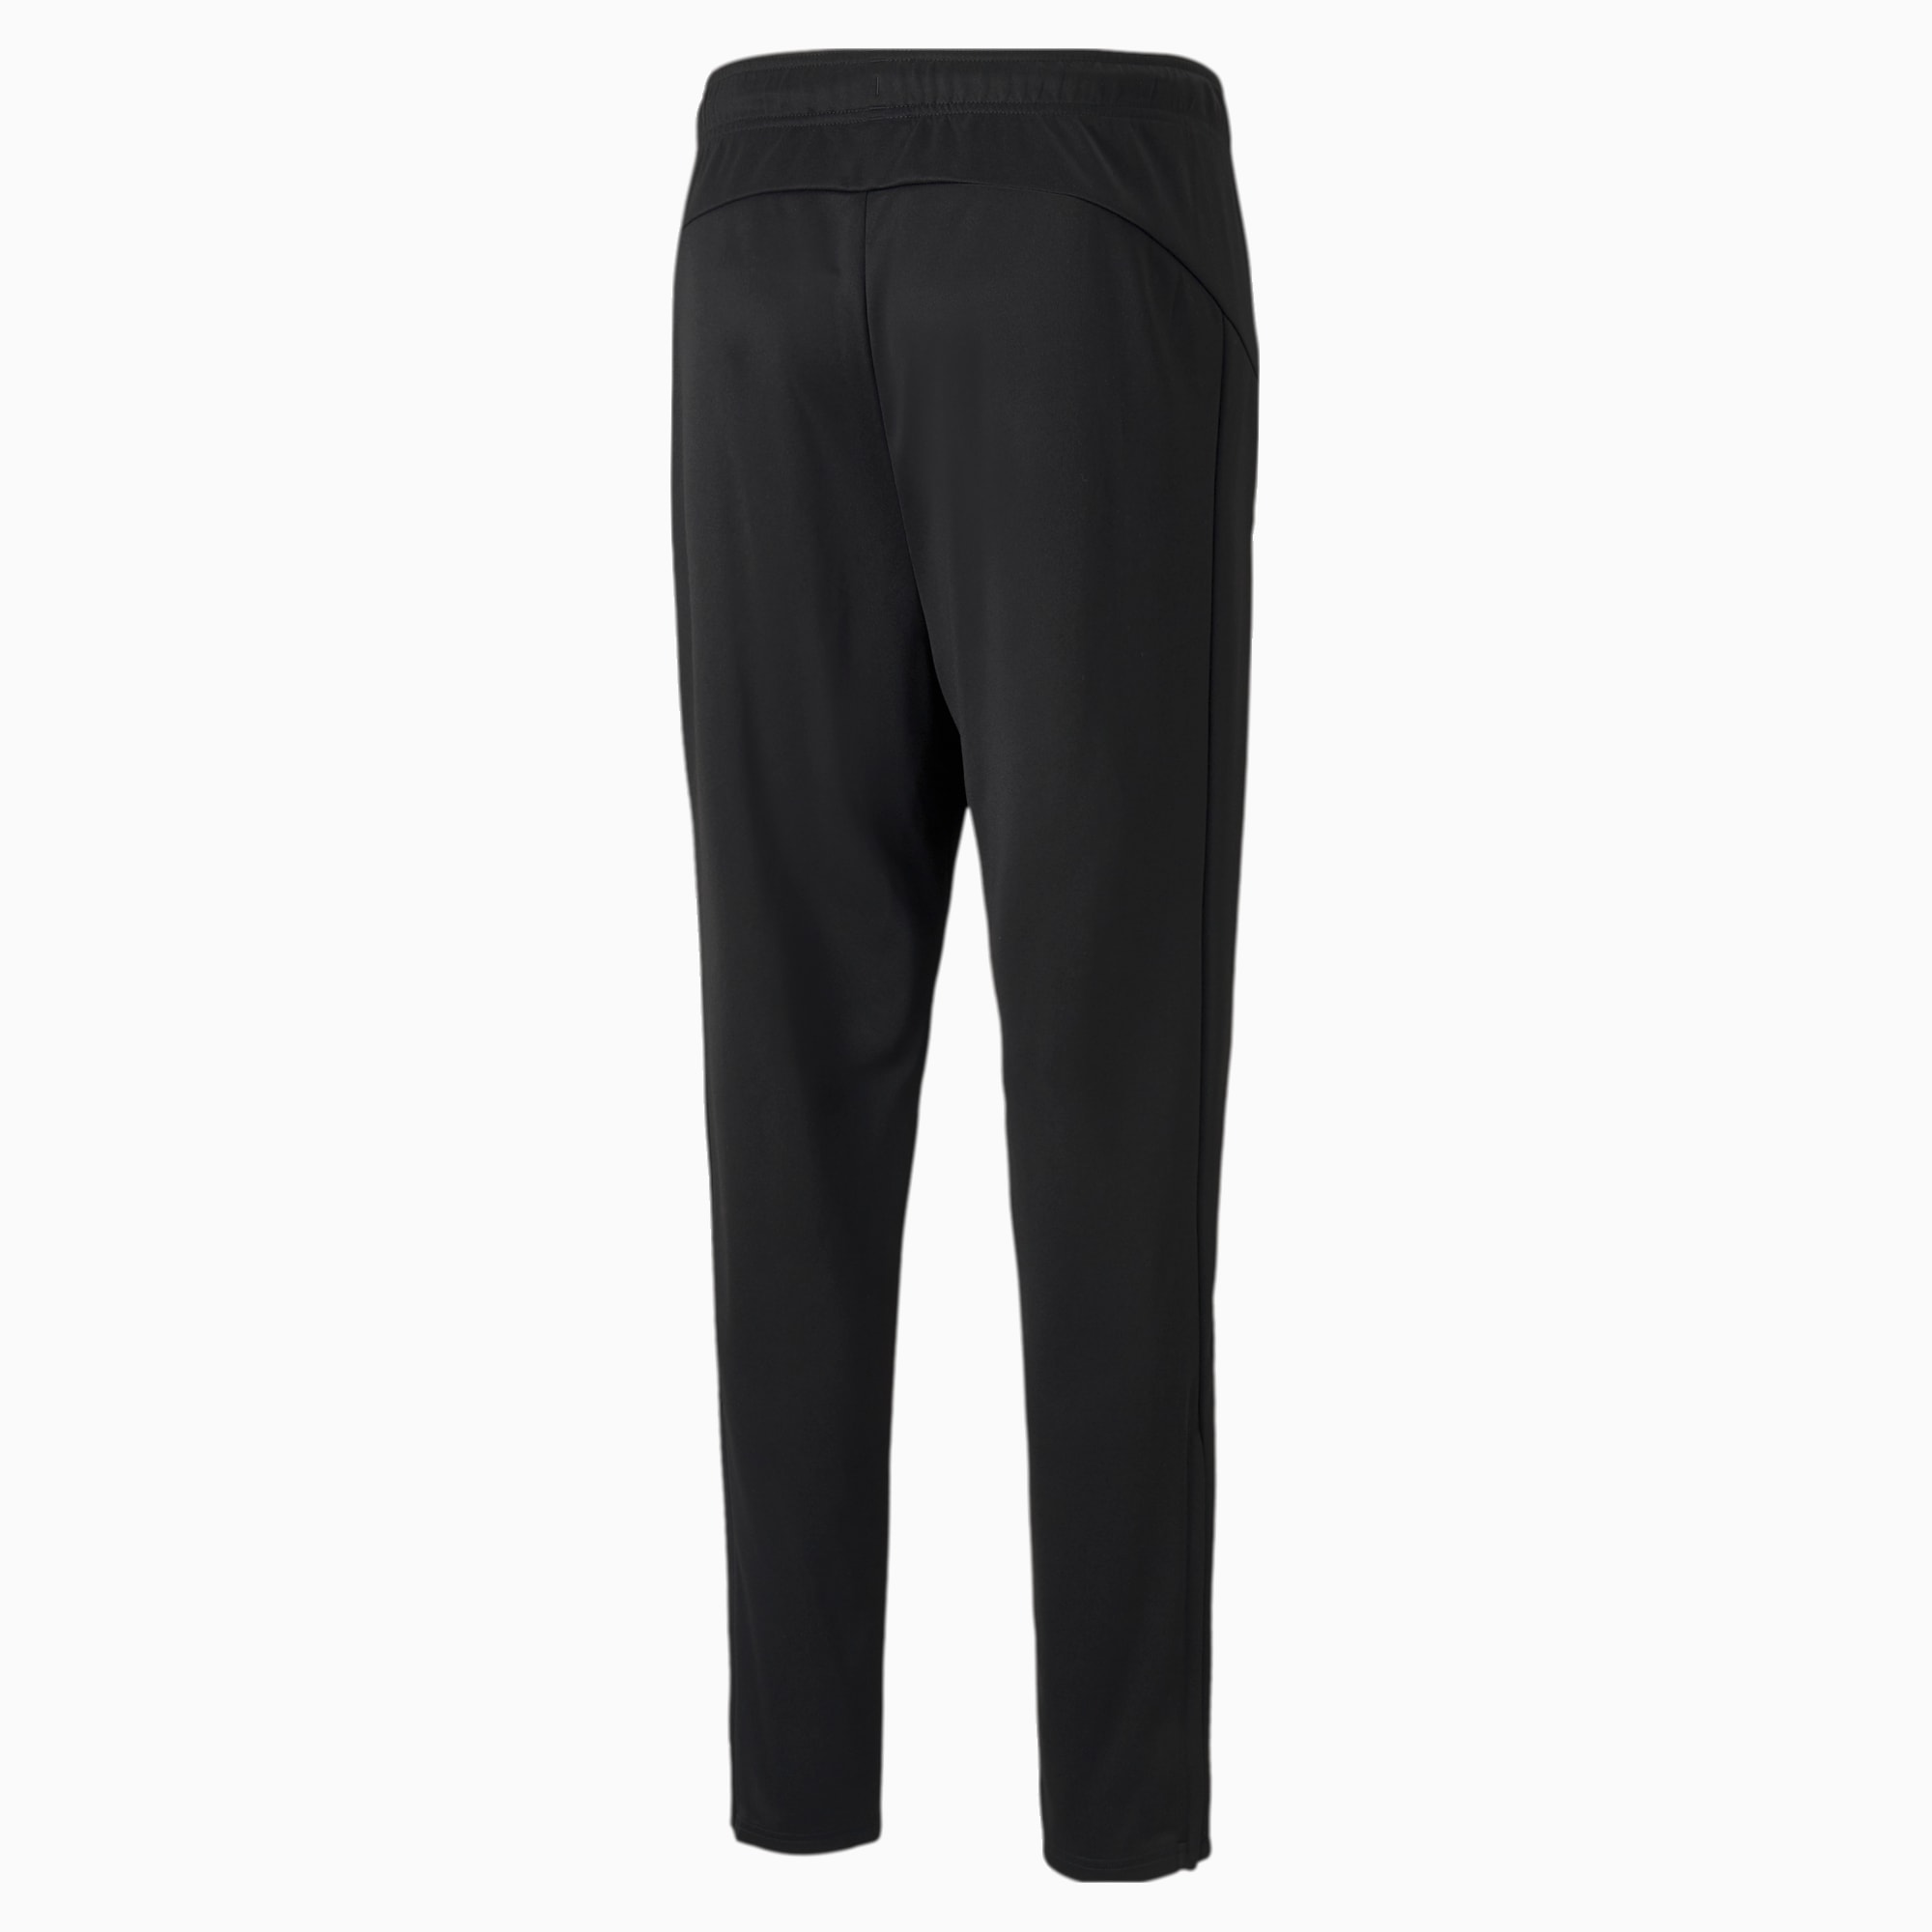 PUMA Active Tricot Men's Sweatpants, Black, Size 4XL, Clothing